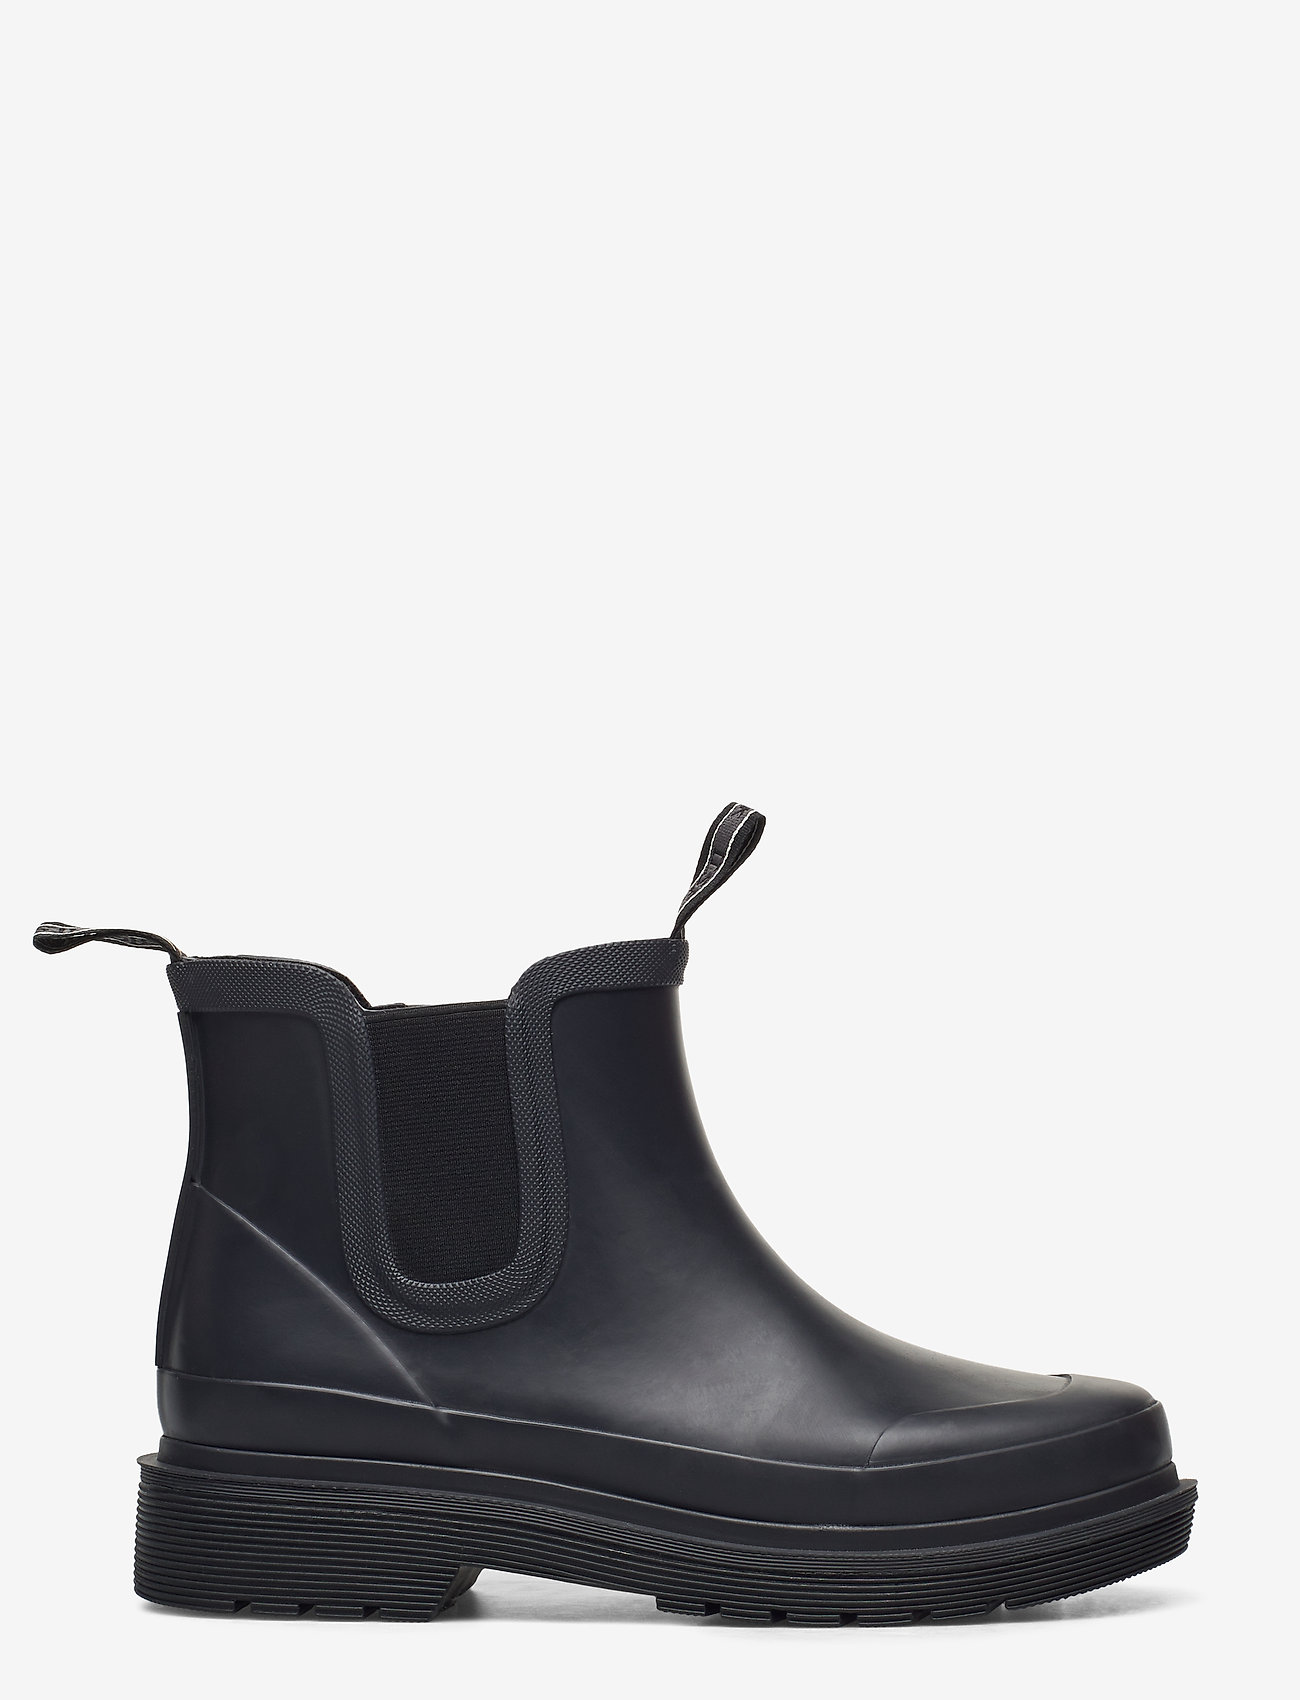 Ilse Jacobsen - Rubber boots ankel - damen - black - 1